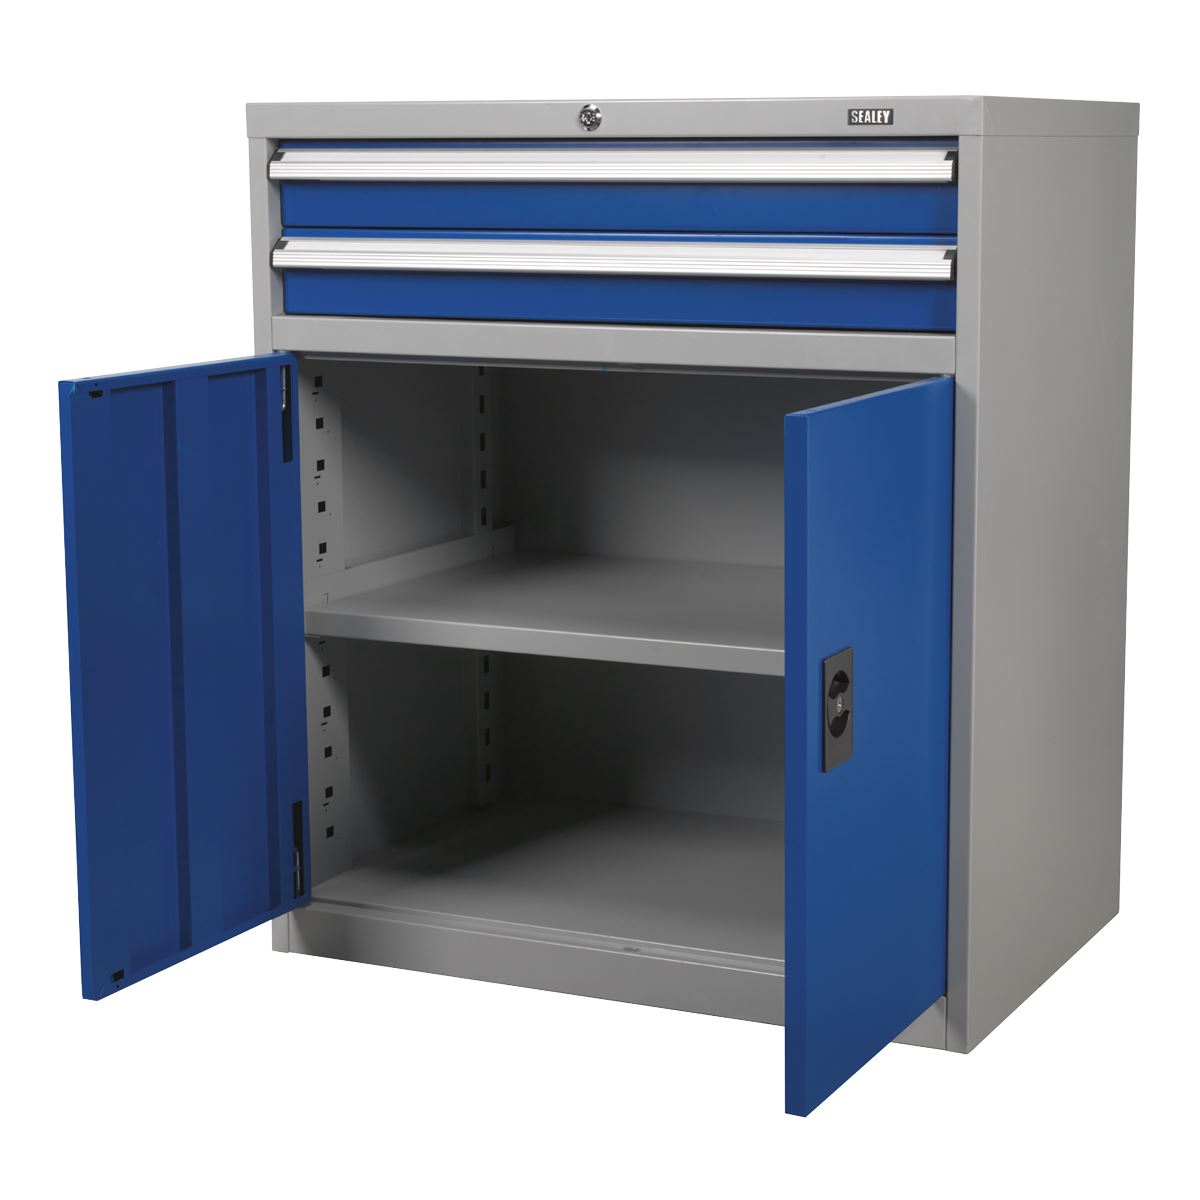 Sealey Premier Industrial Industrial Cabinet 2 Drawer & 1 Shelf Double Locker